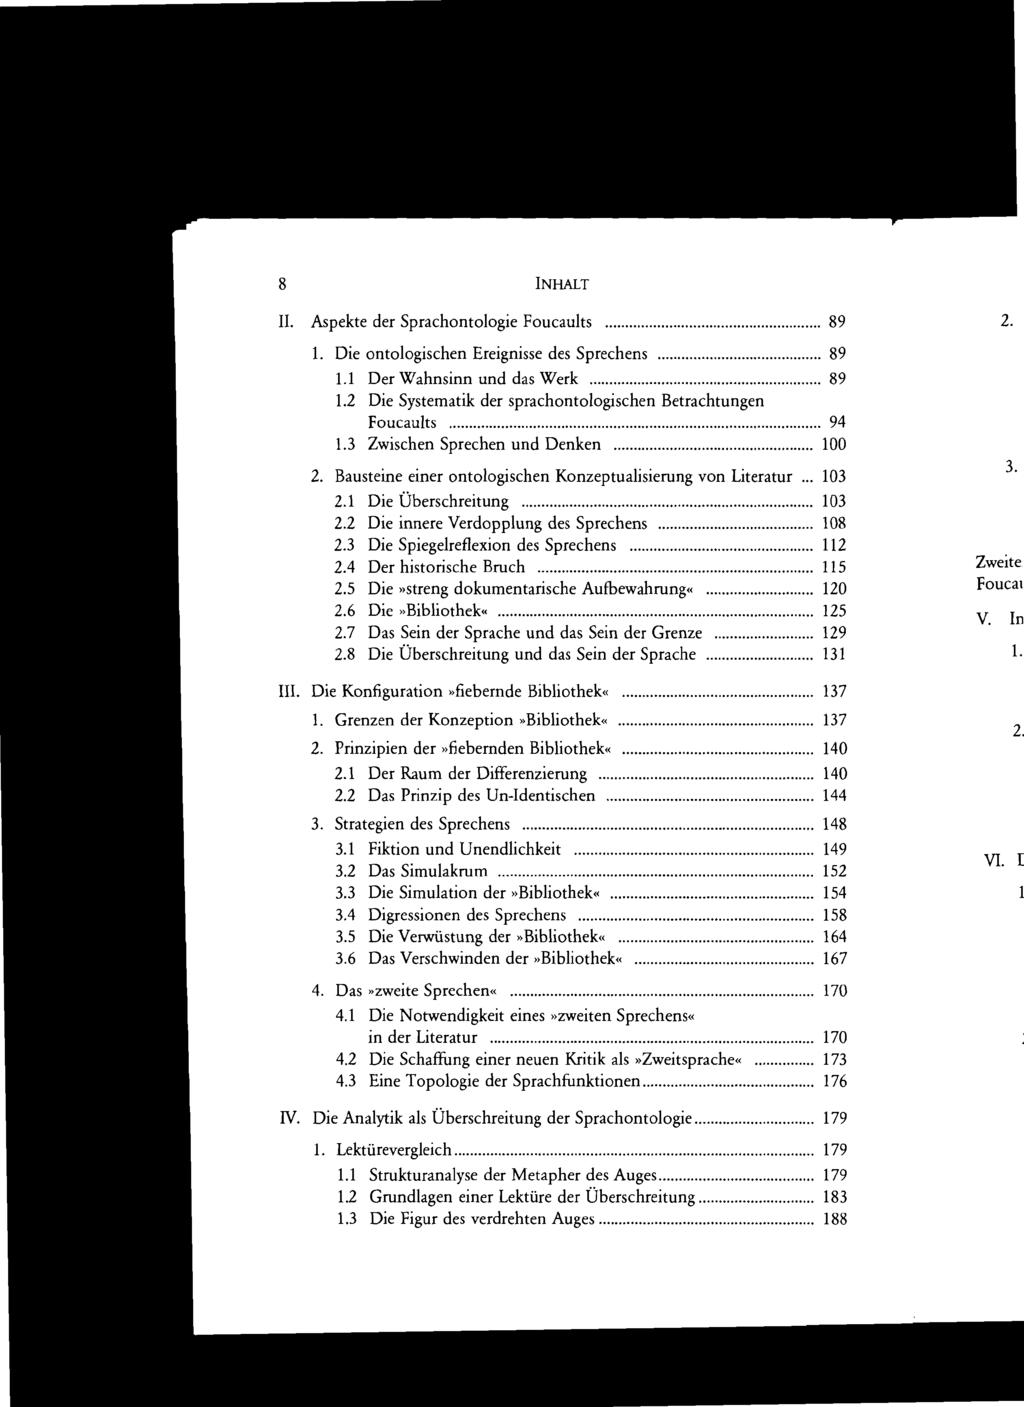 8 INHALT H. Aspekte der Sprachontologie Foucaults 89 1. Die ontologischen Ereignisse des Sprechens 89 1.1 Der Wahnsinn und das Werk 89 1.